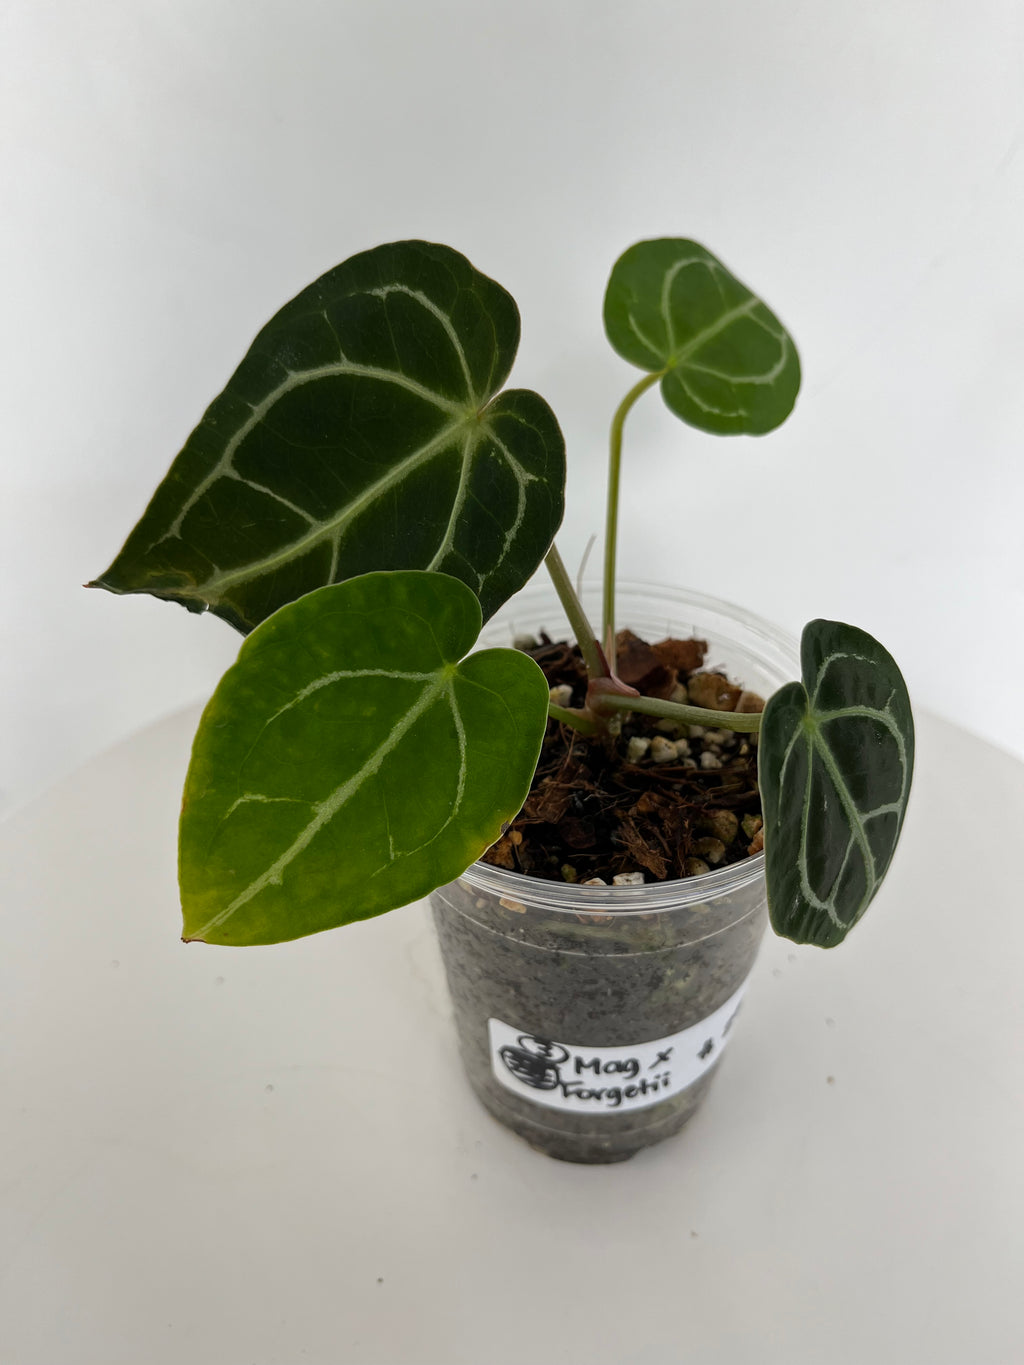 Anthurium magnificum x forgetii-3 (9)